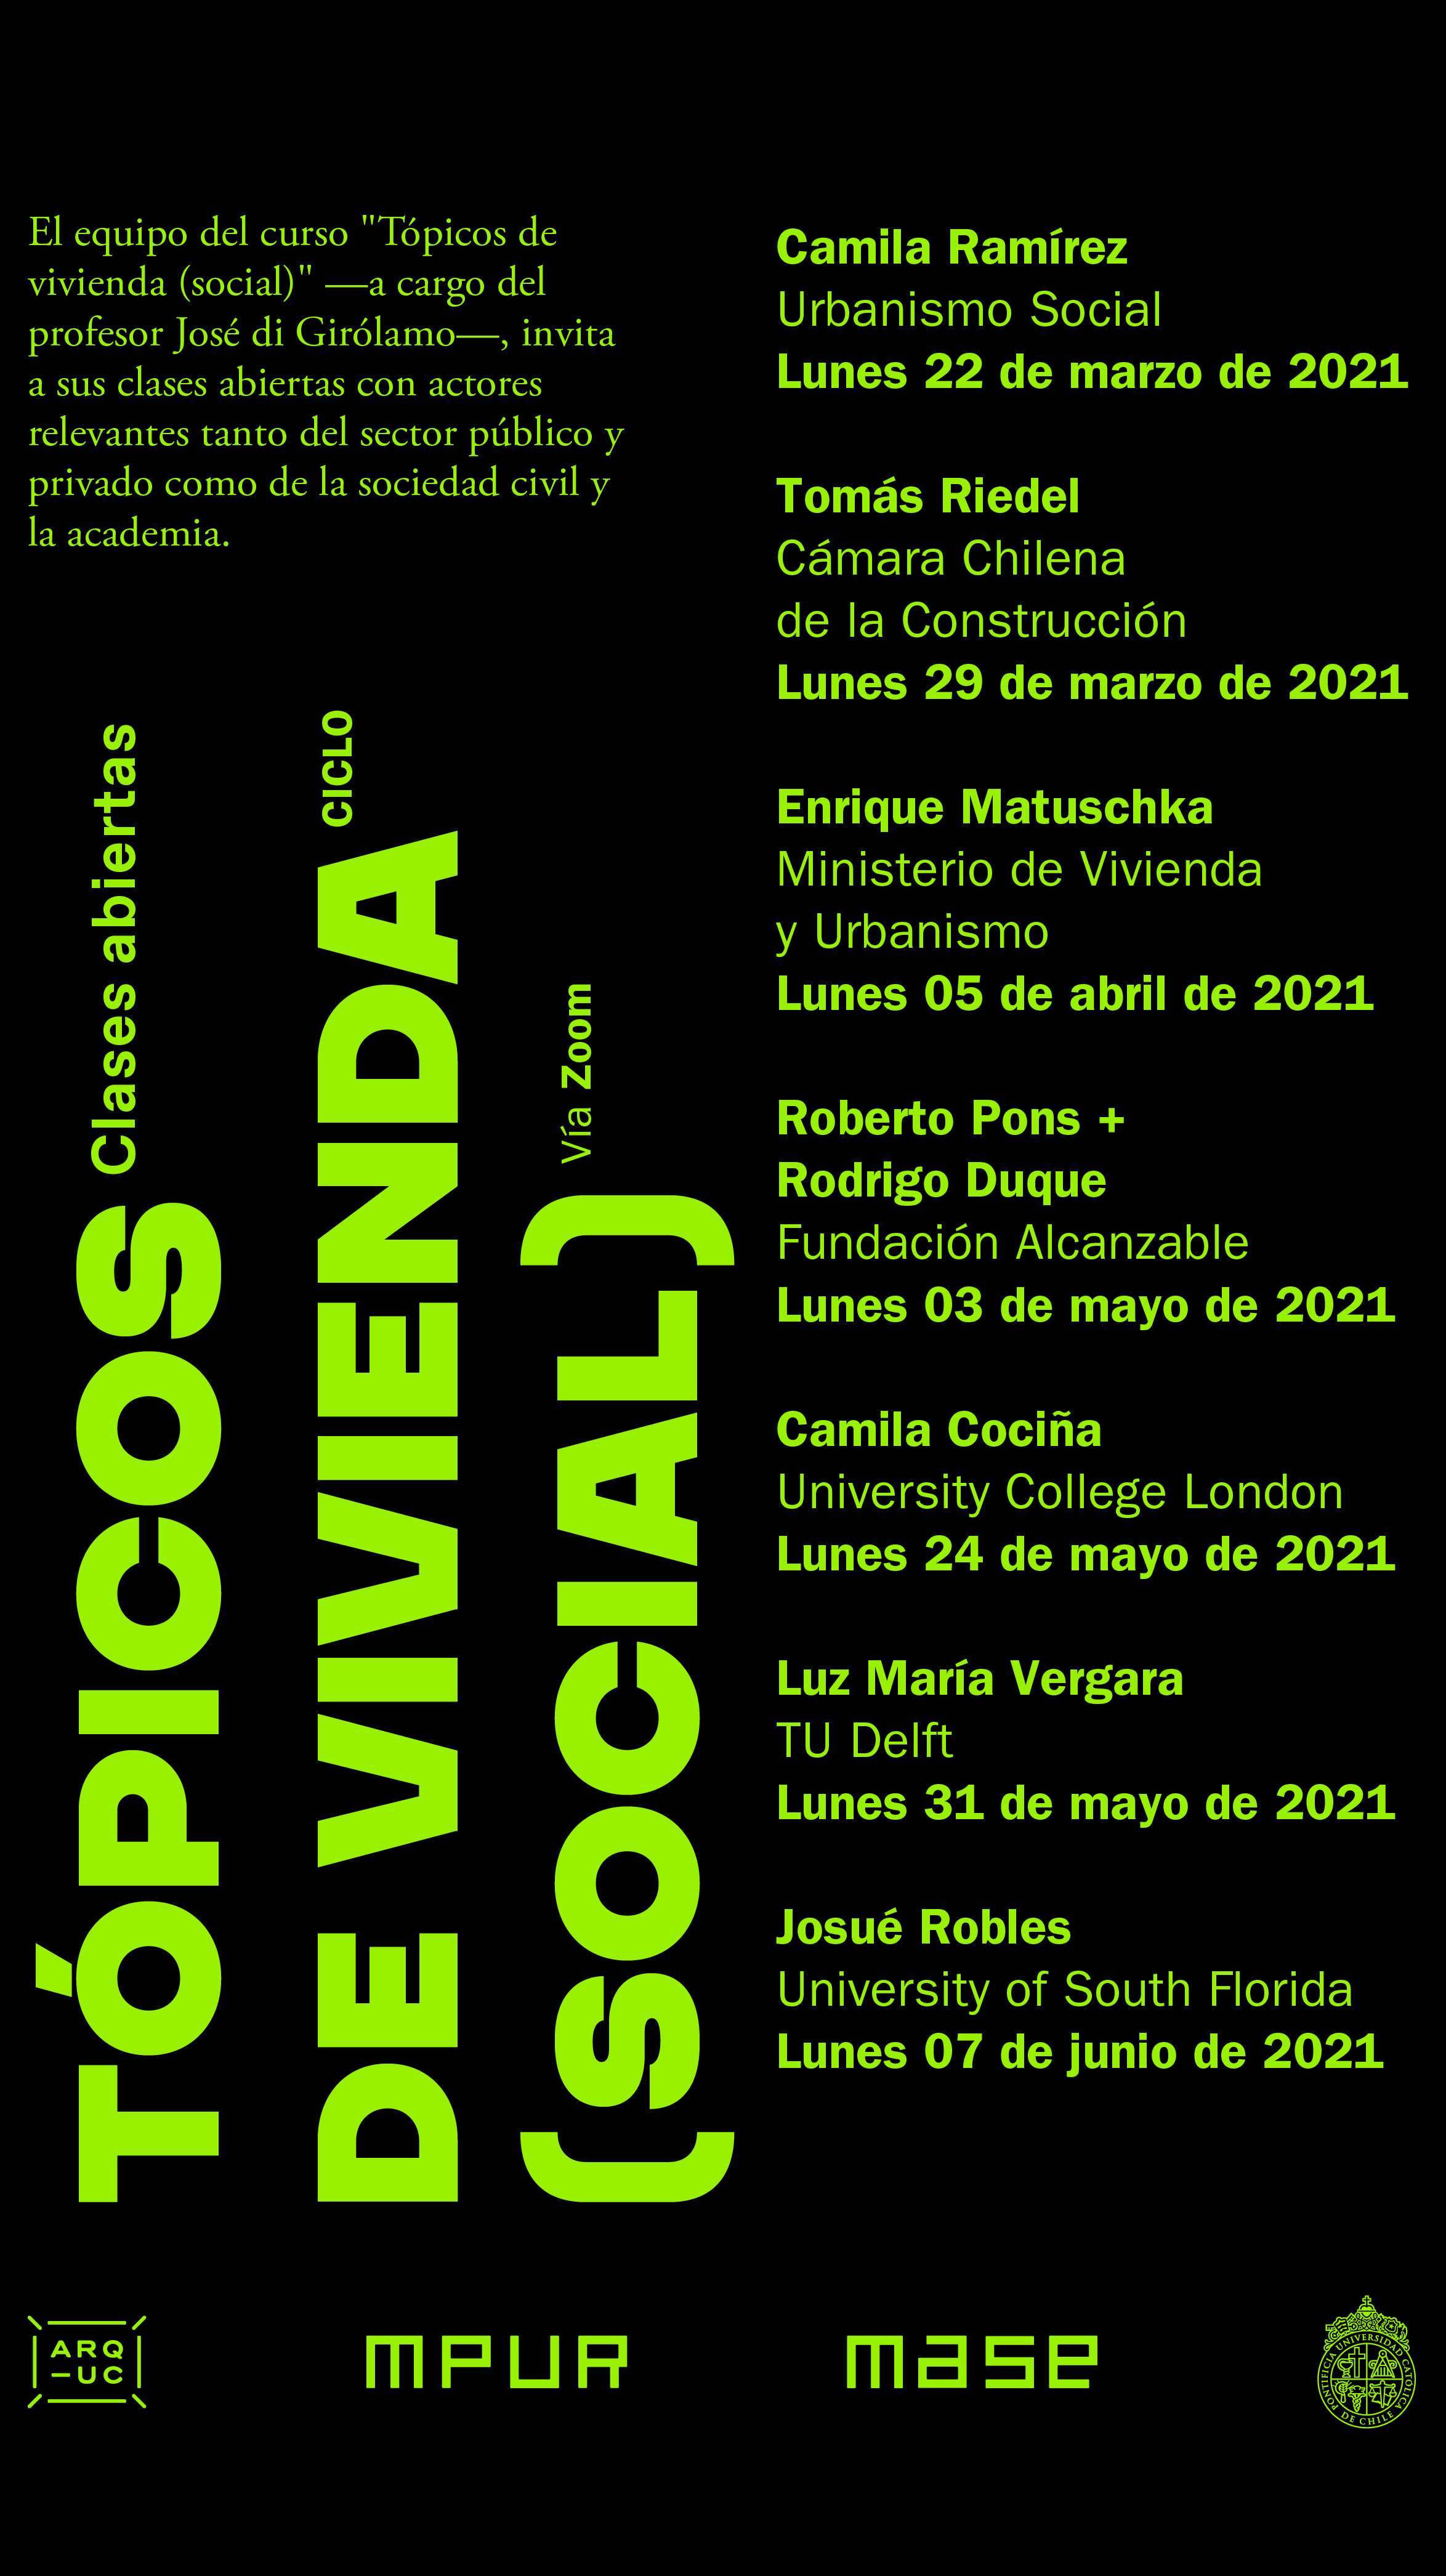 20210318_AFICHE_Clases_abiertas_curso_Tópicos_de_vivienda_social.jpg